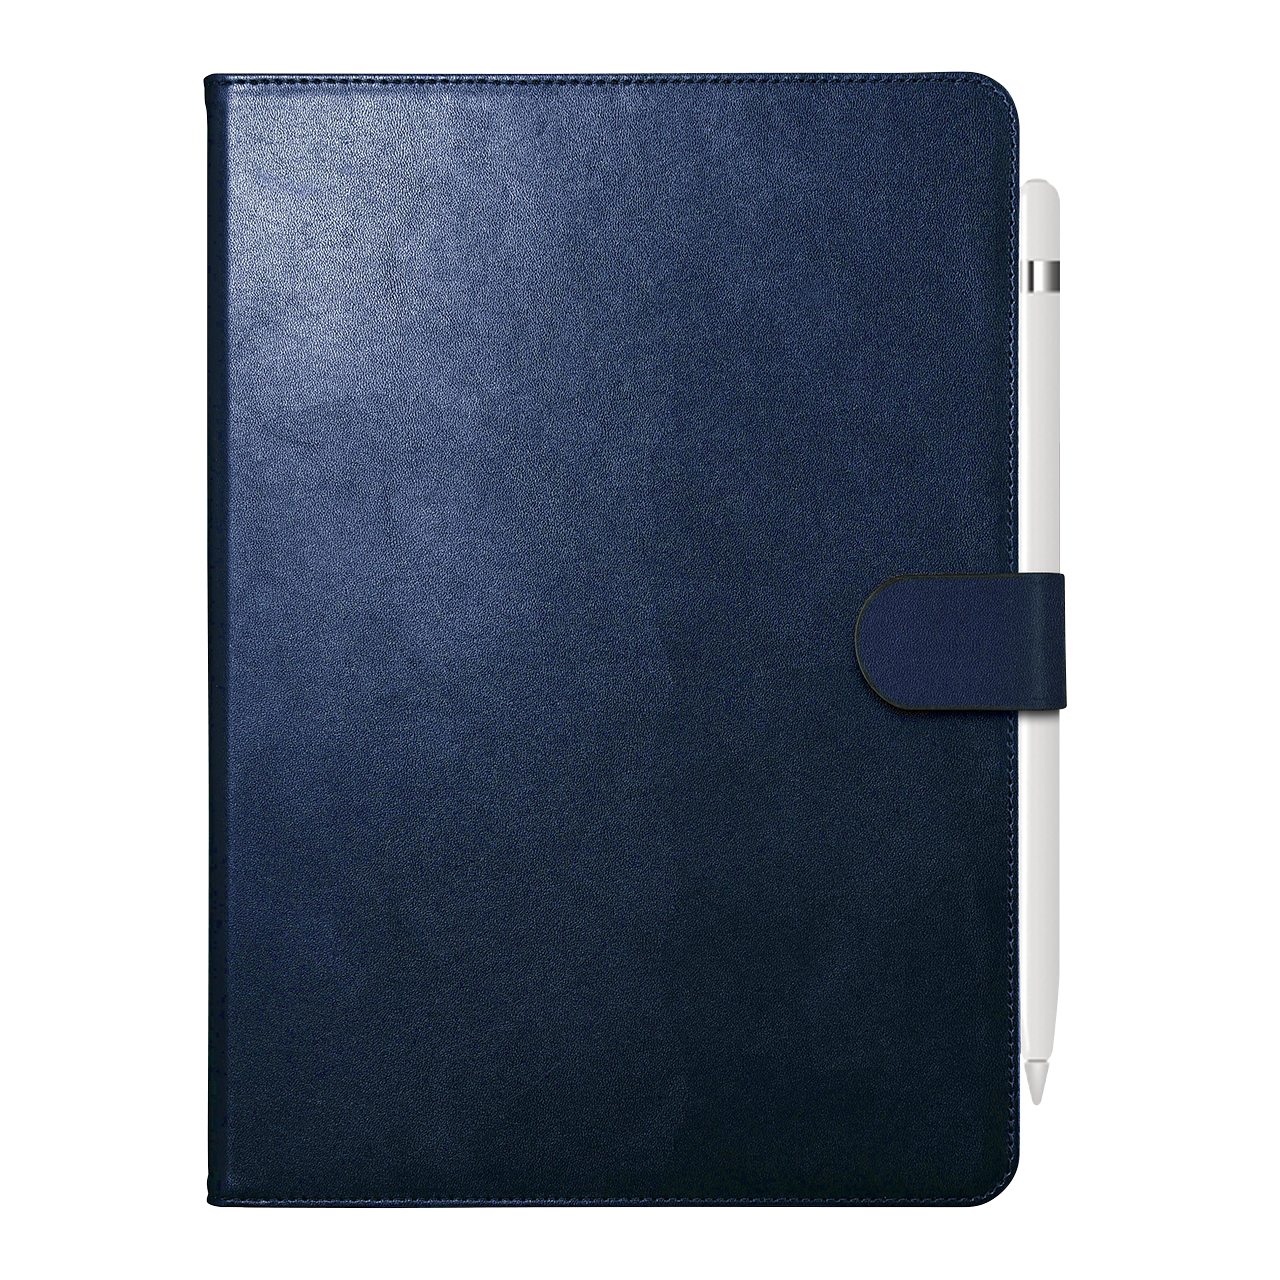 10.2インチiPad（2019年発売モデル）に対応するレザーケース全8商品を 